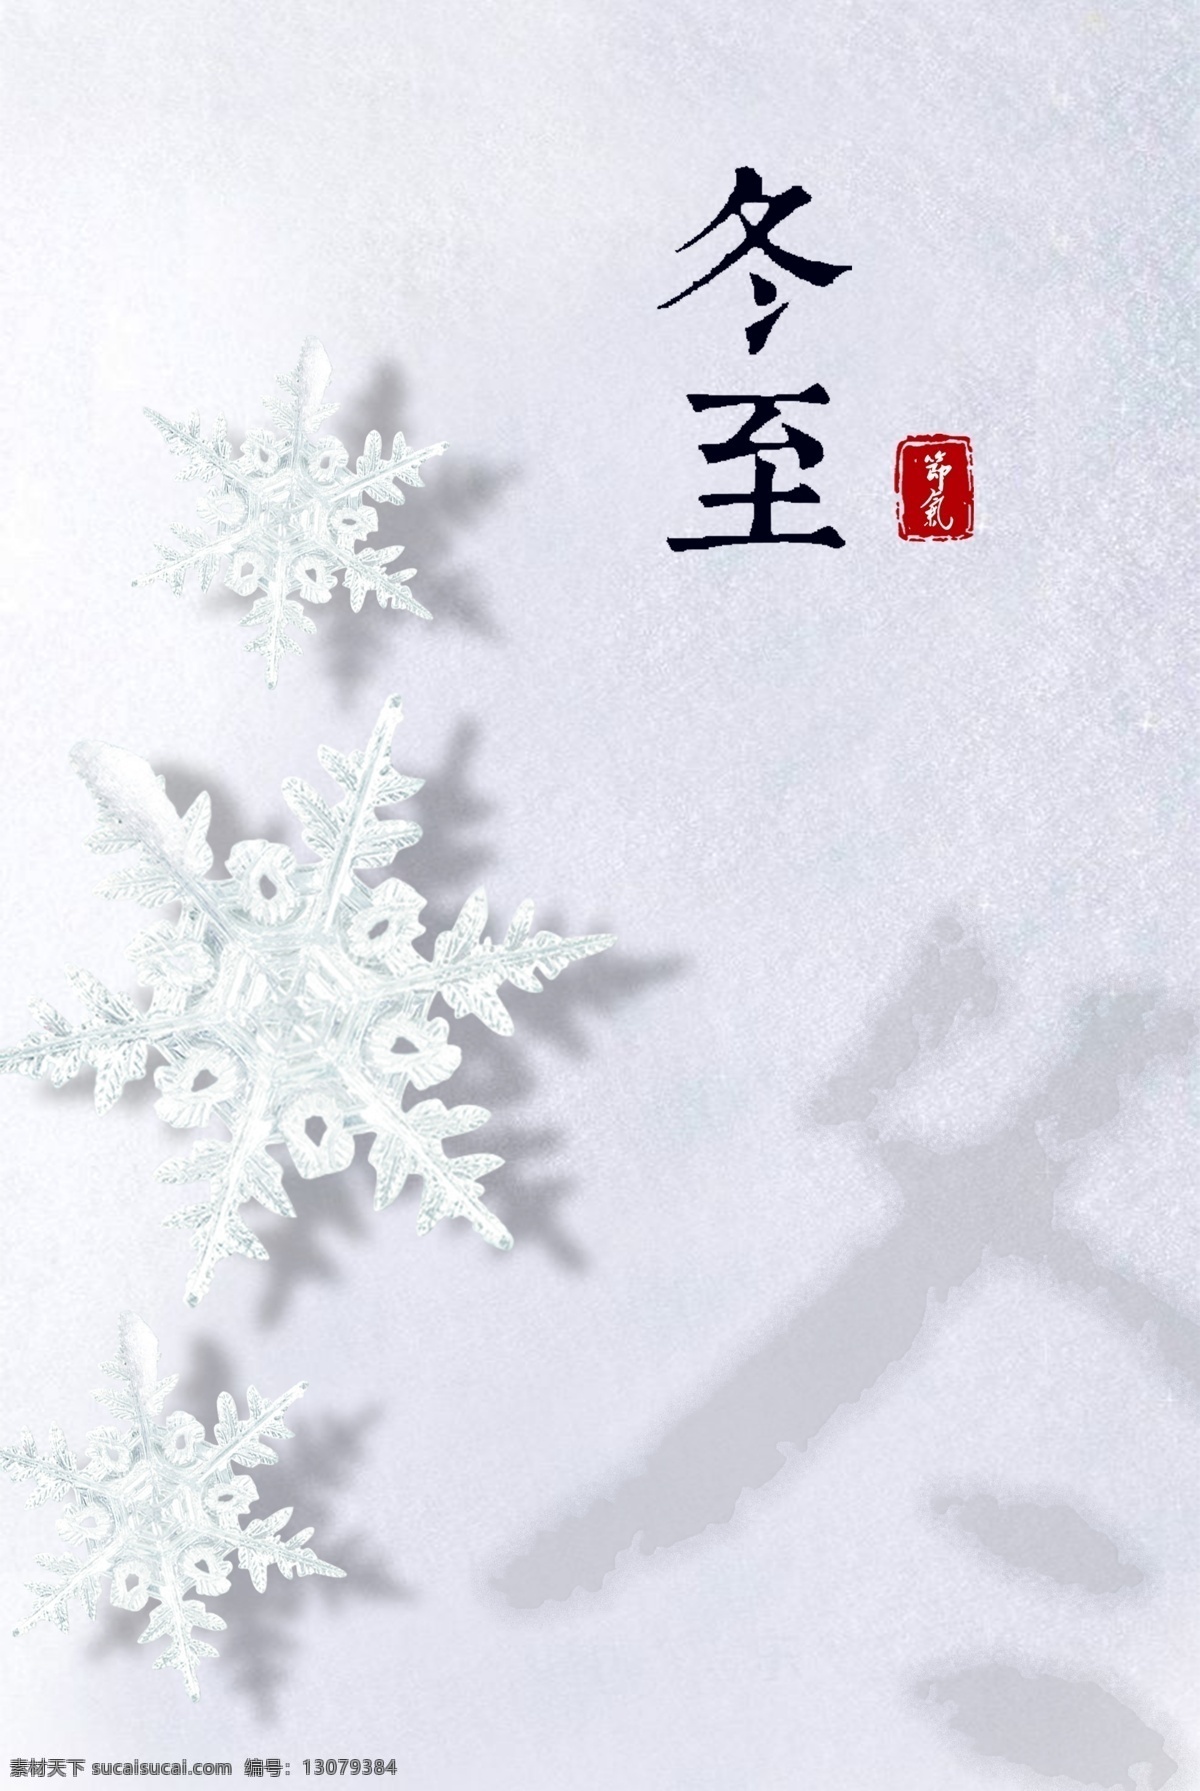 简约 白色 雪地 冬至 日 节气 海报 背景 二十四节气 24节气 中华 传统 冬至日 冬天 冬季 雪花 清新